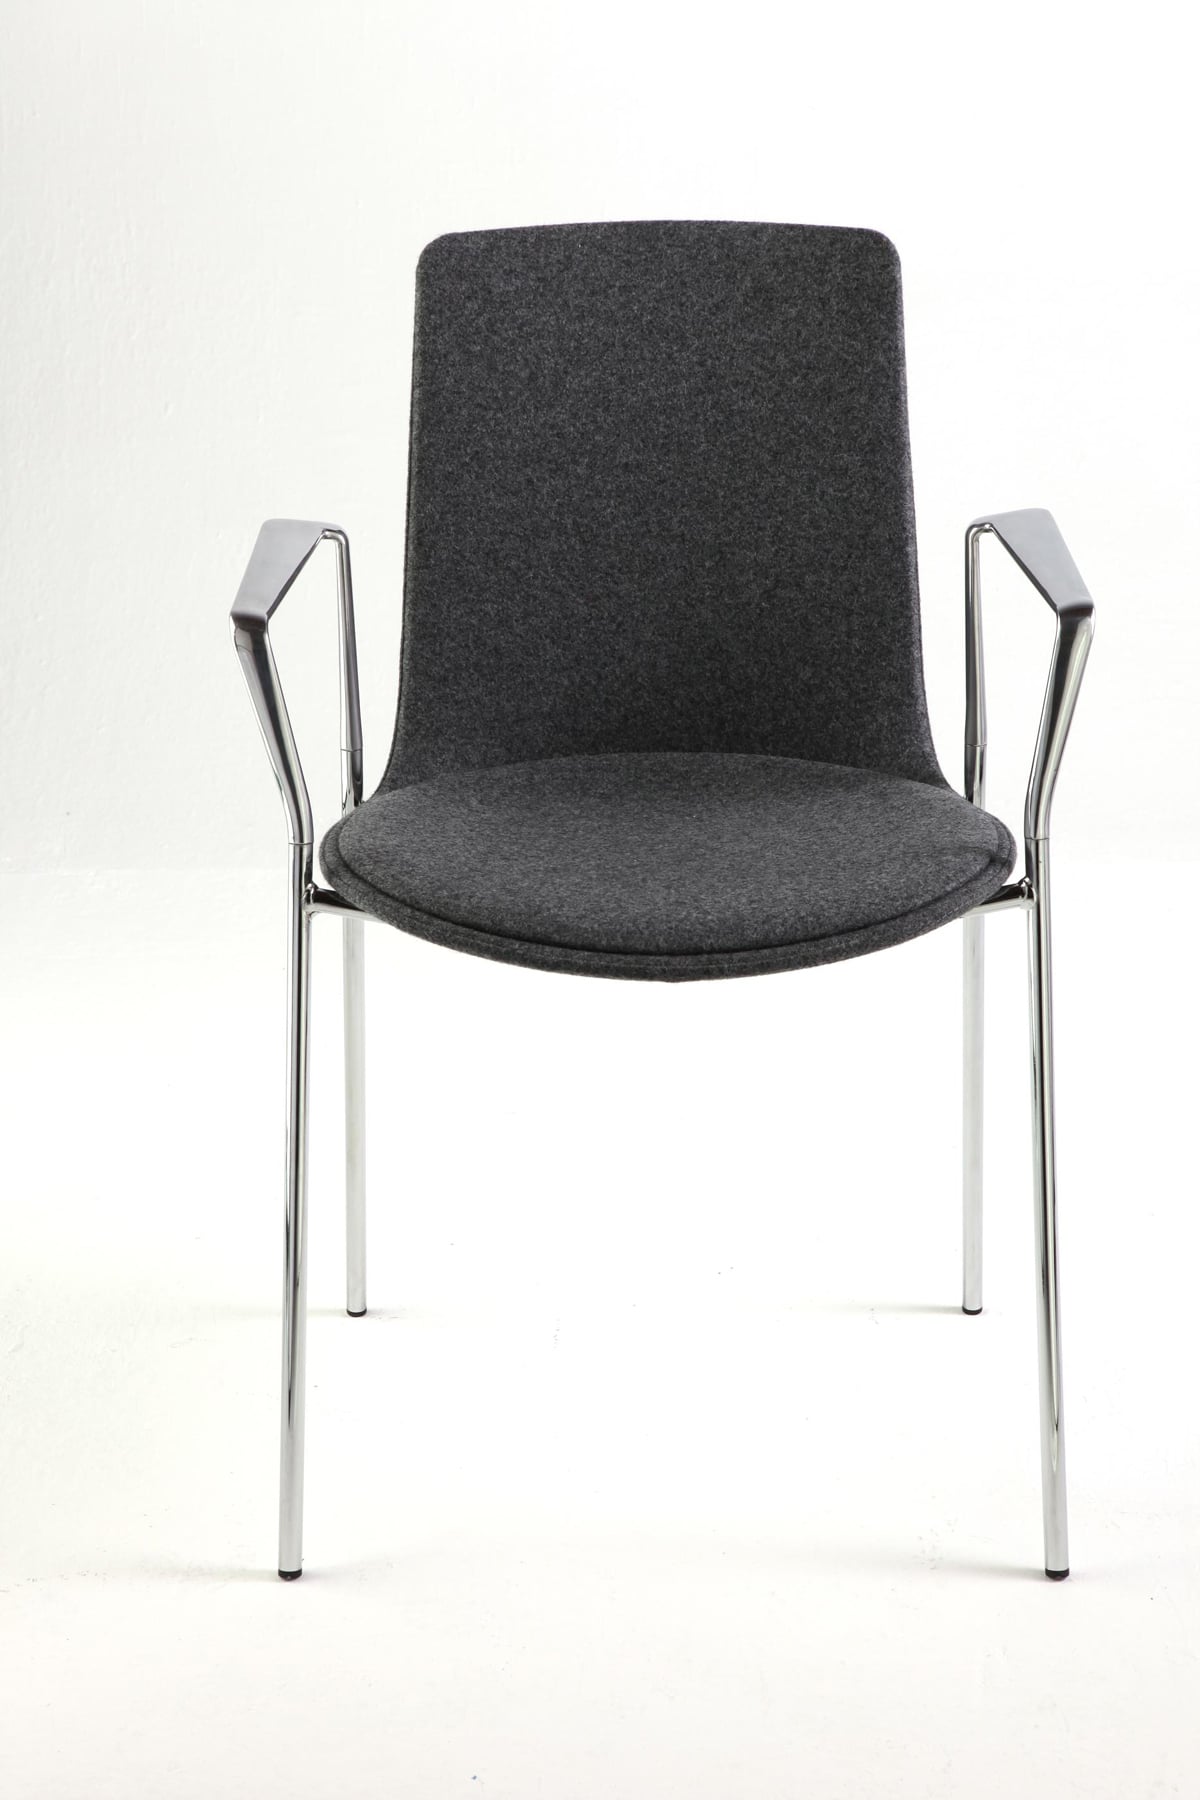 Lottus High chair